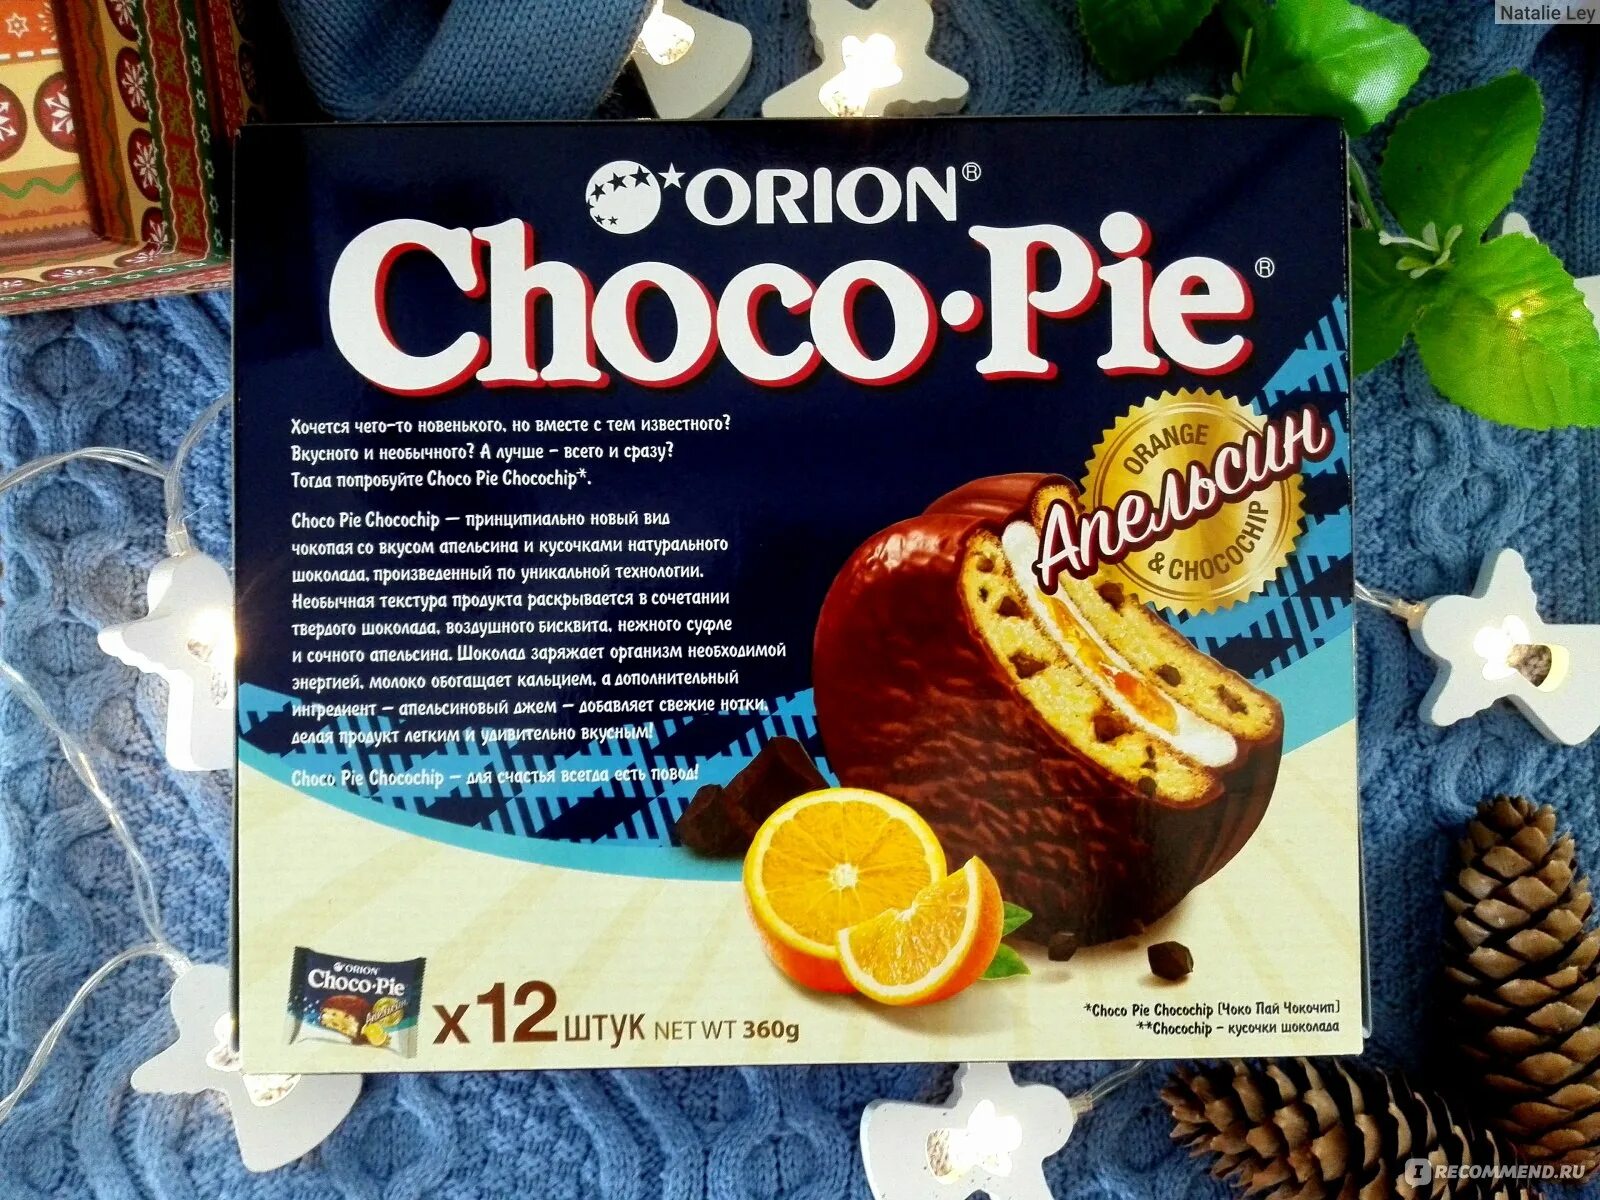 Чоко Пай Орион состав. Choco pie Orion состав. Orion Choco pie апельсин. Орион Чоко Пай с апельсиновый вкусом. Состав пая